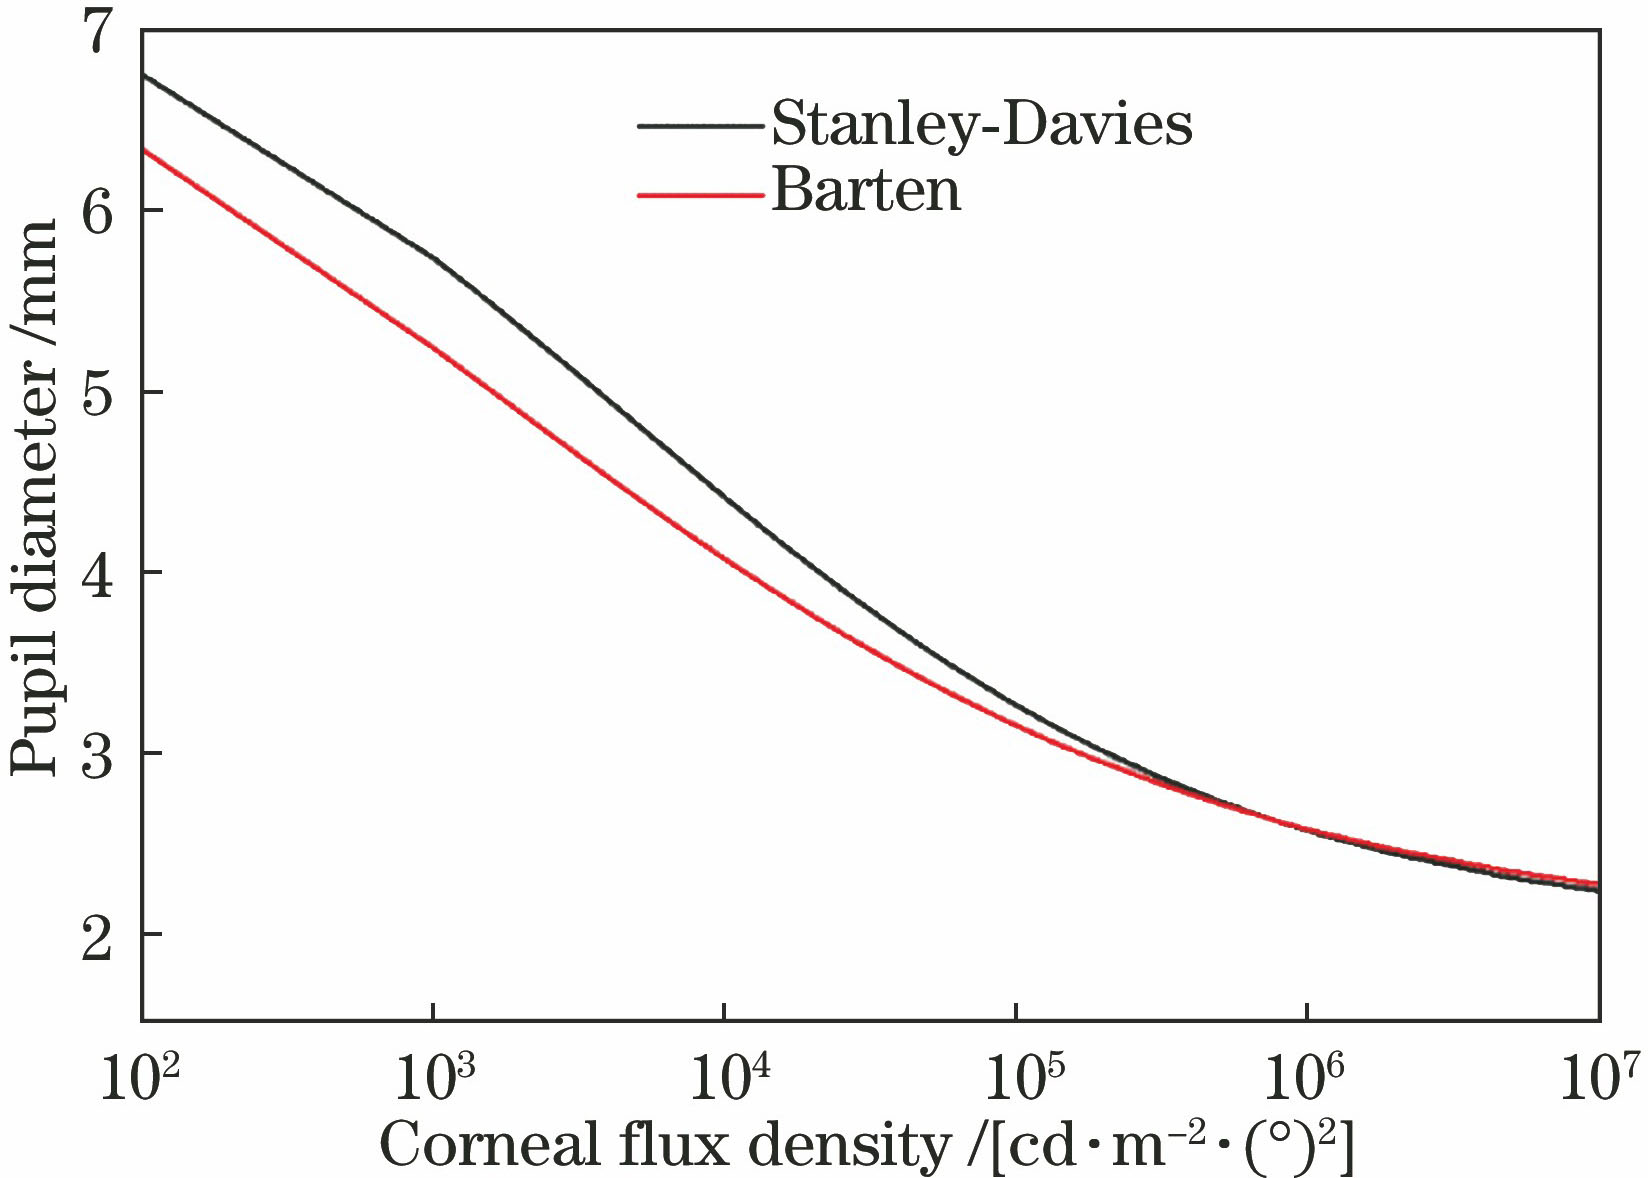 Relationship between corneal flux density and pupil diameter